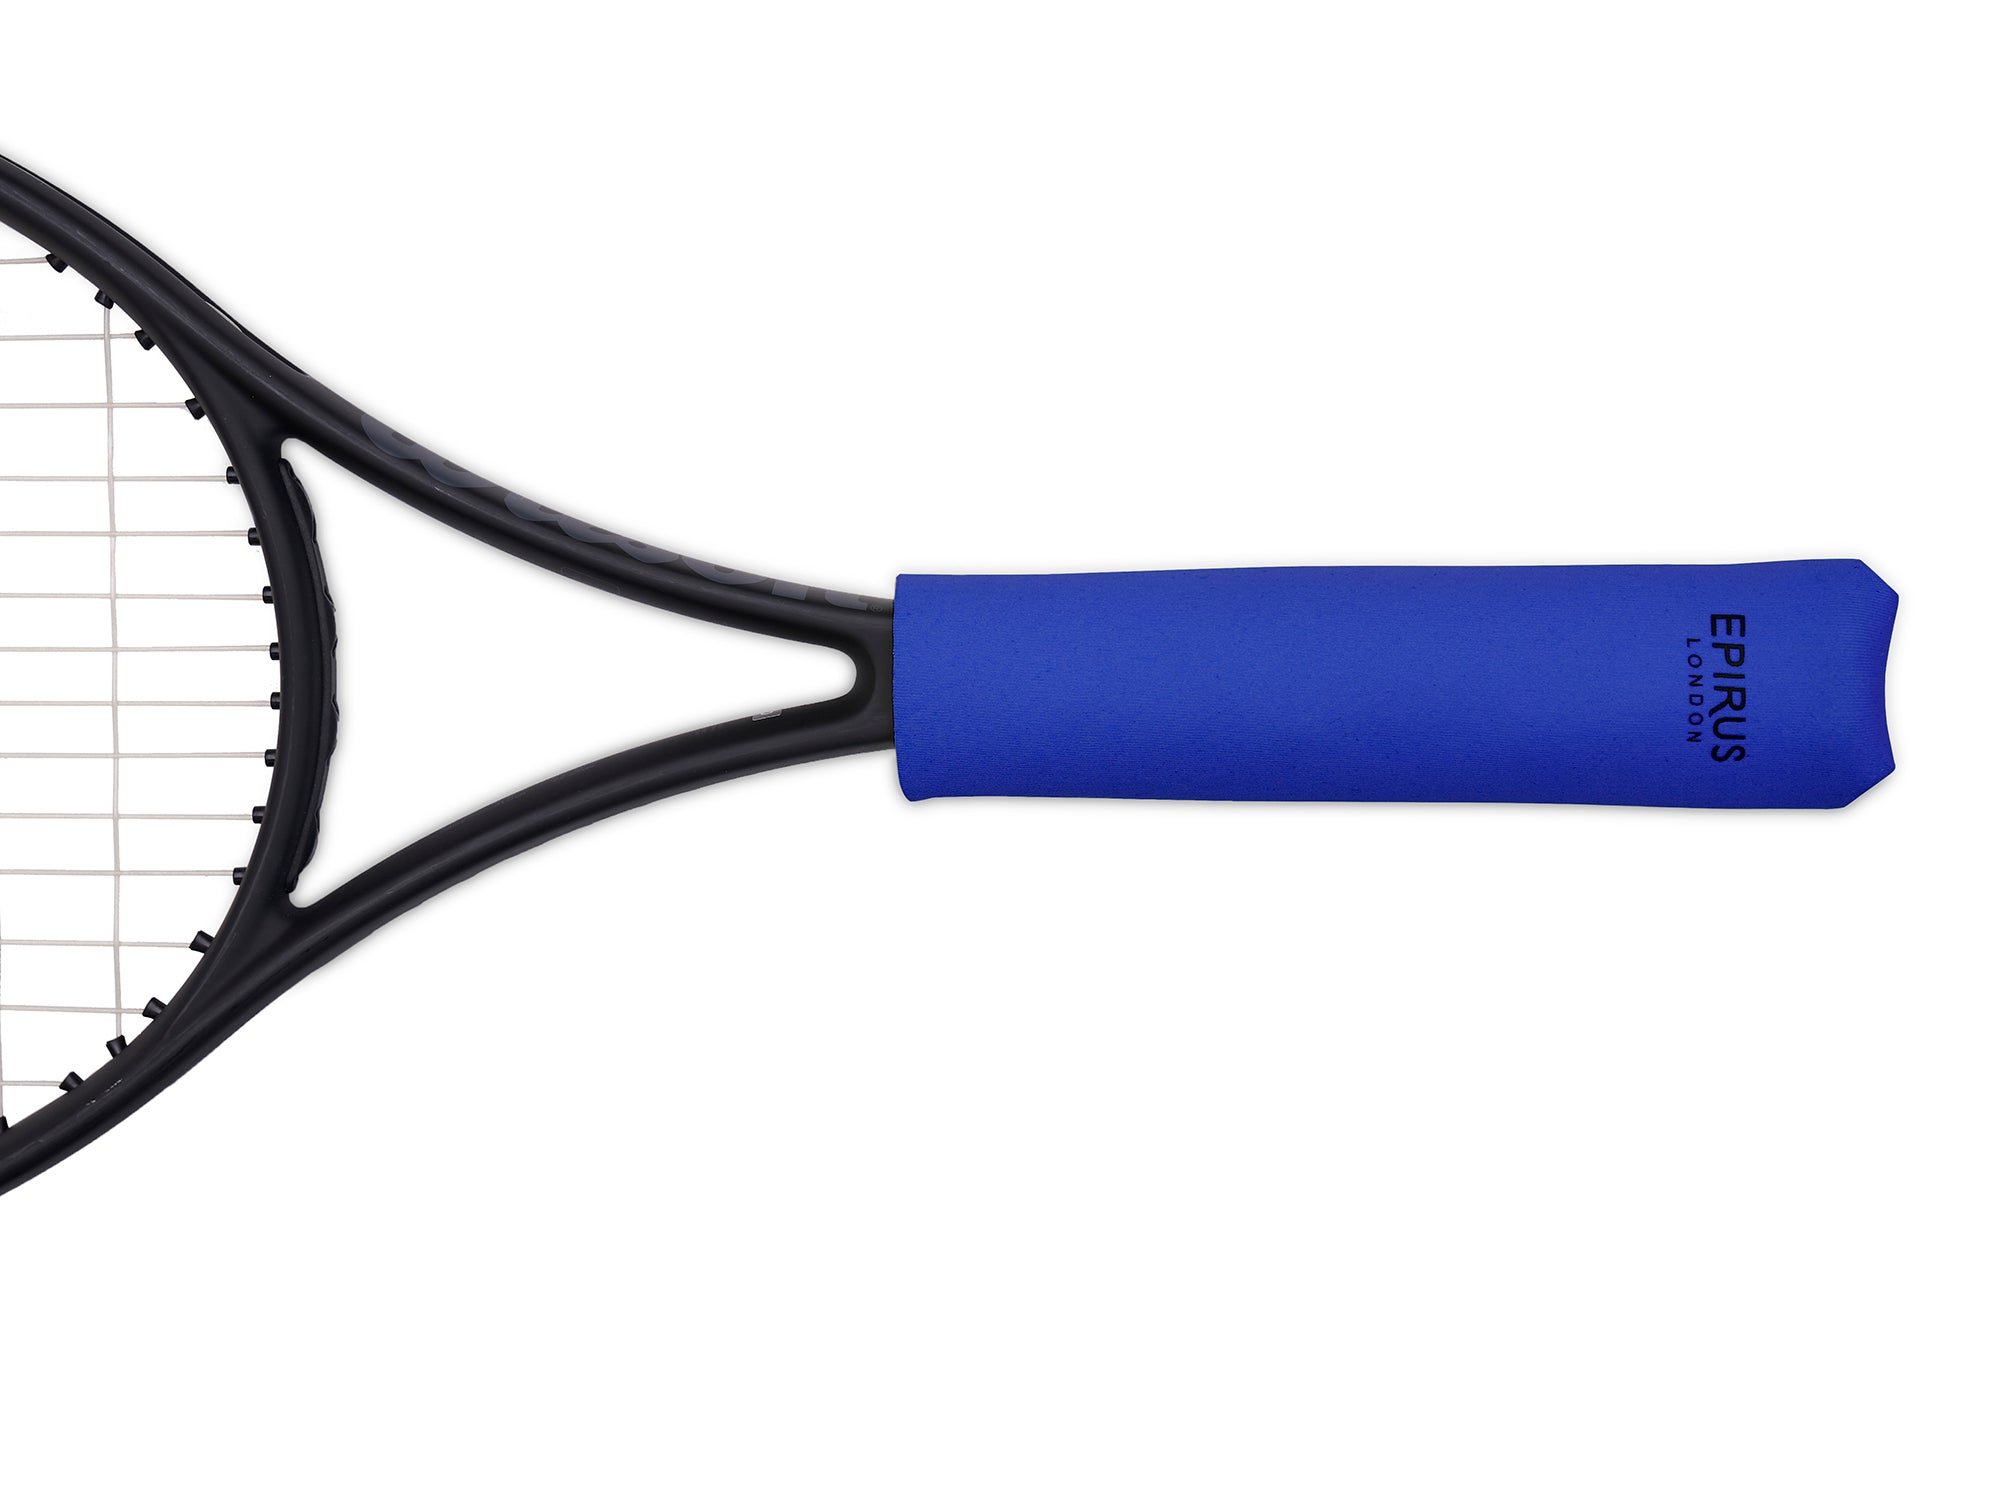 Neoprene Grip Covers  Keep Your Tennis Racket Handles Dry